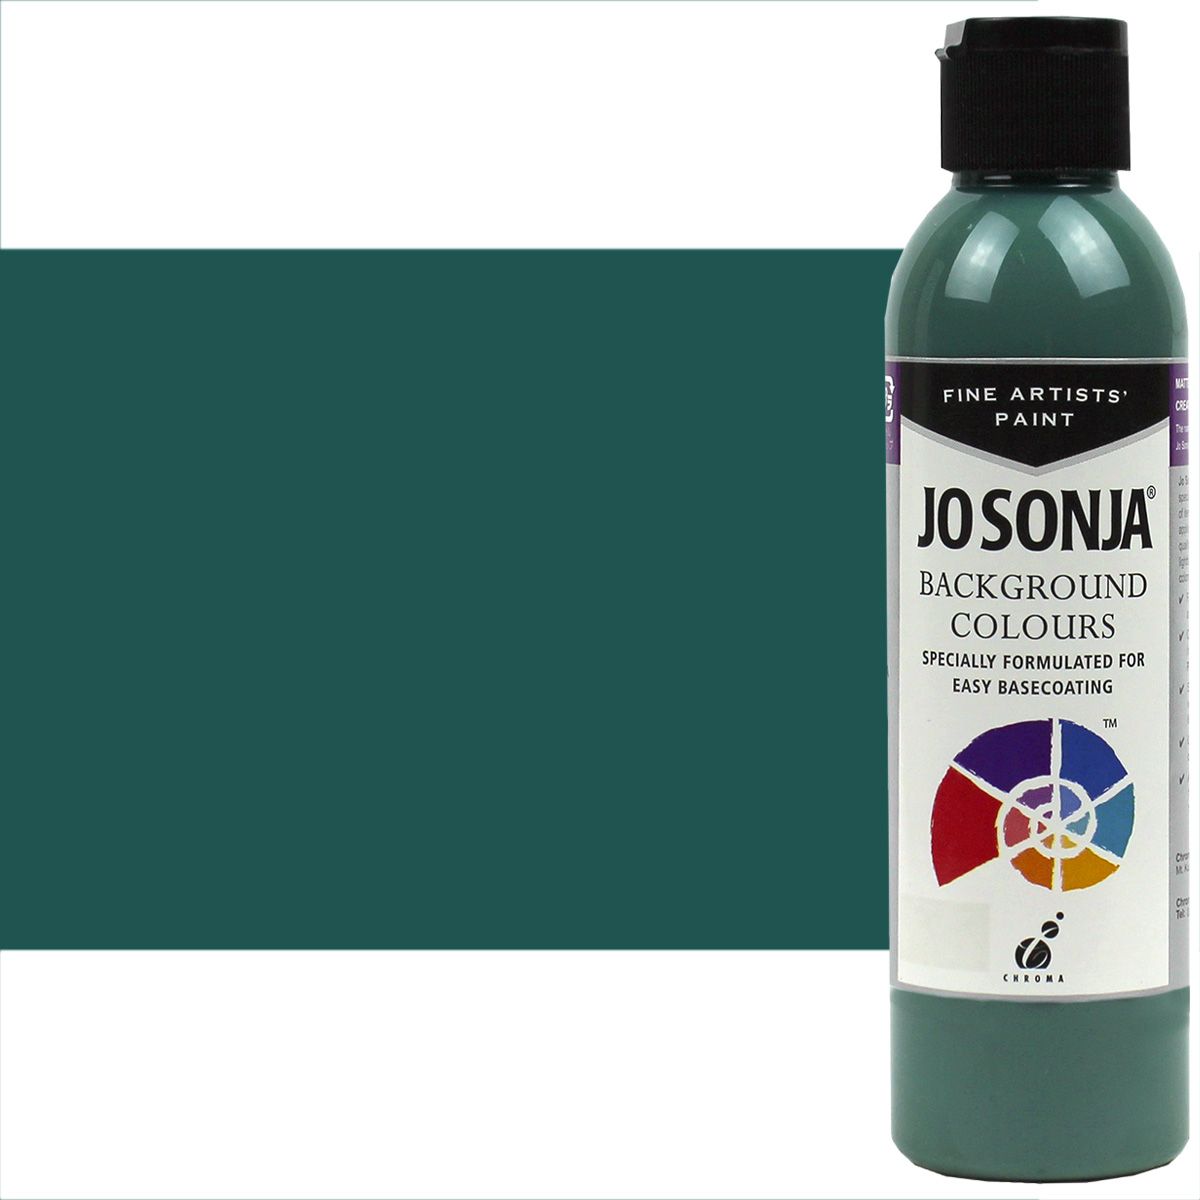 Brush Soap & Conditioner – Jo Sonja's